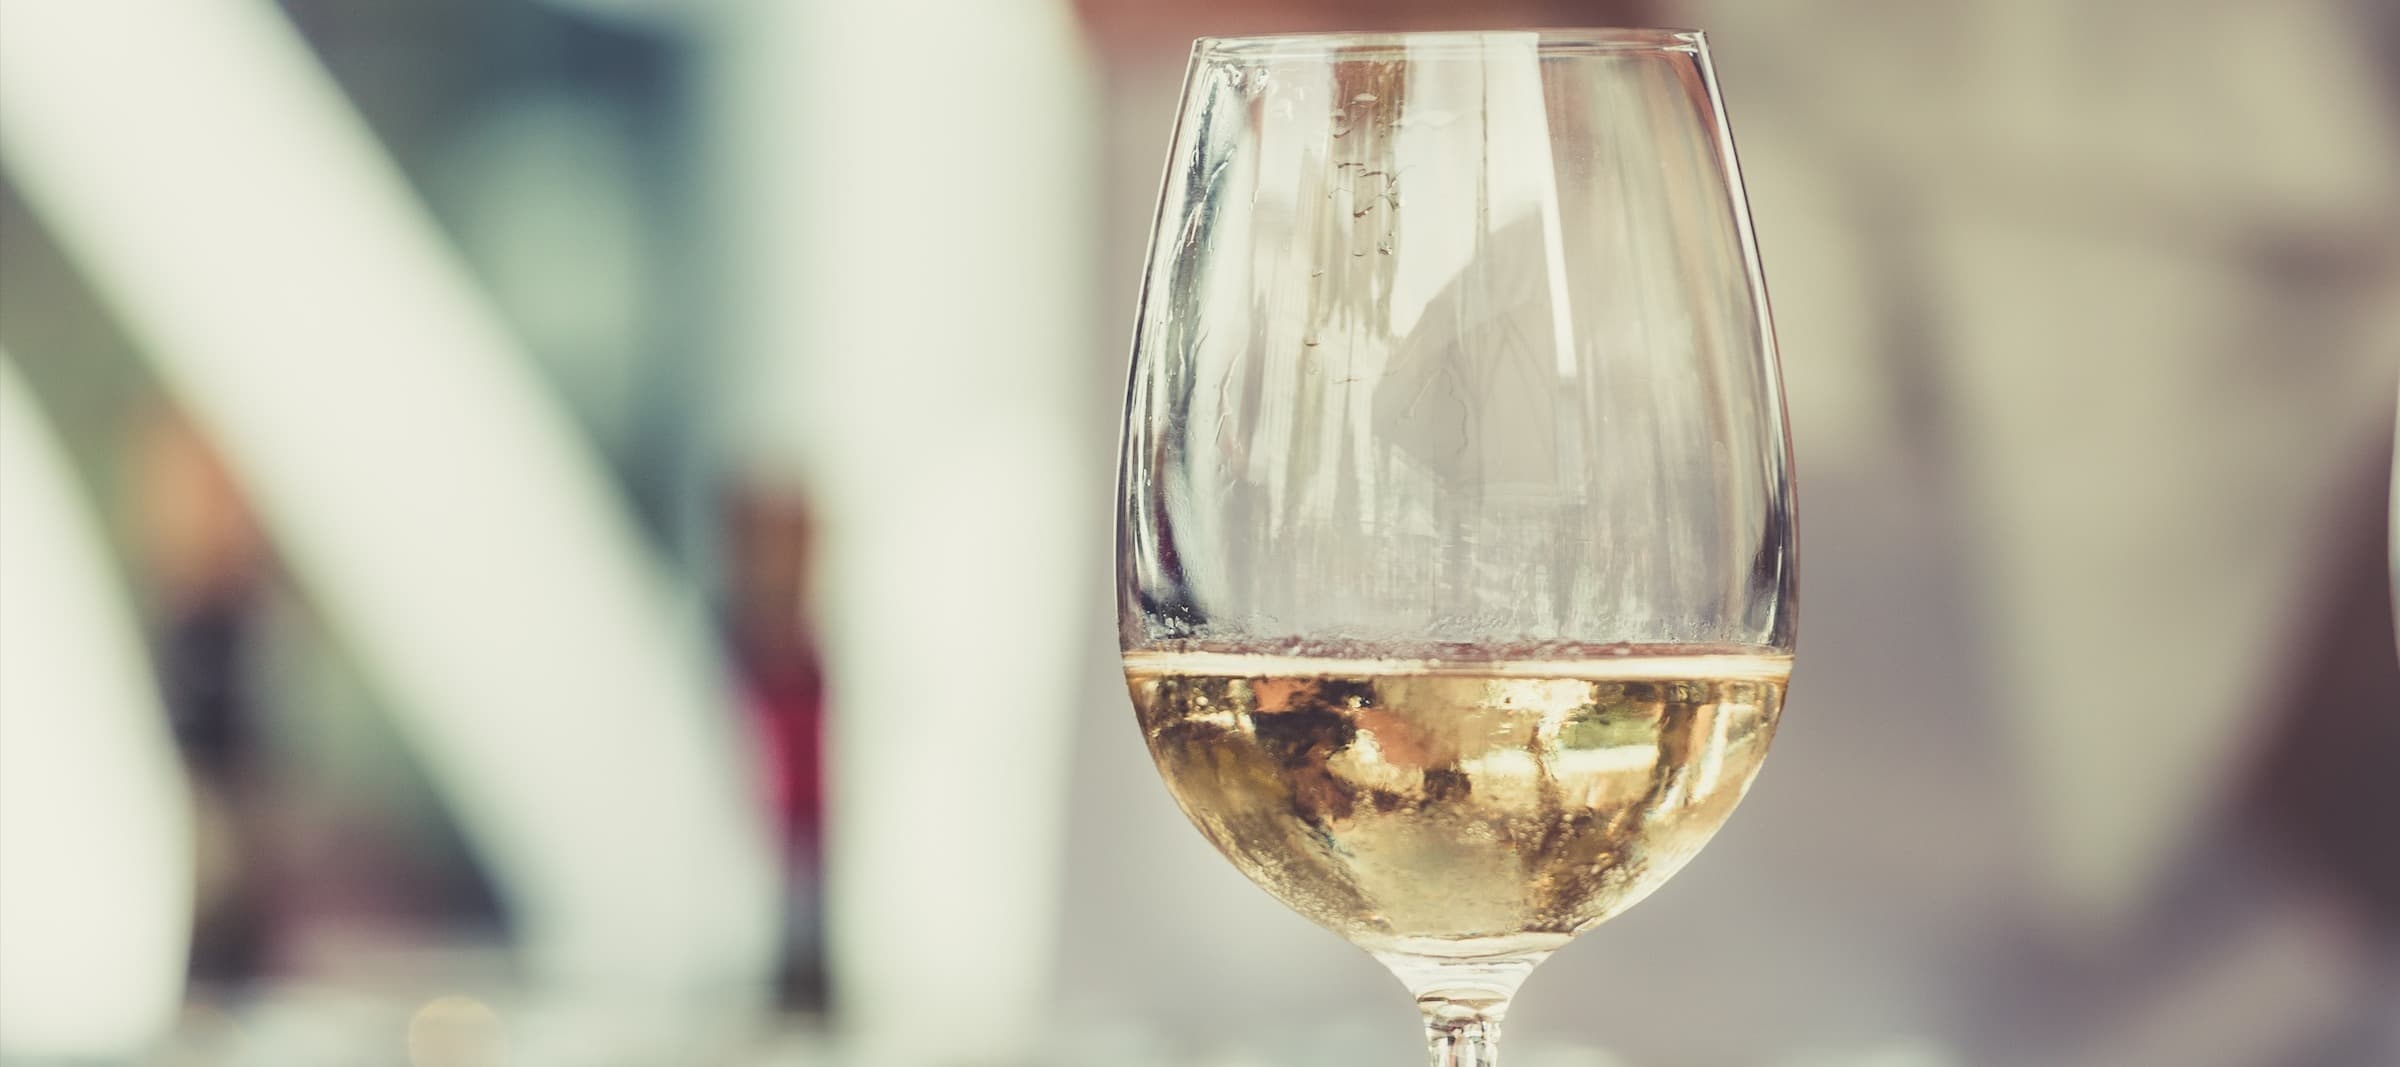 Фото новости: "Продажи белого вина в России впервые превысили продажи красного"